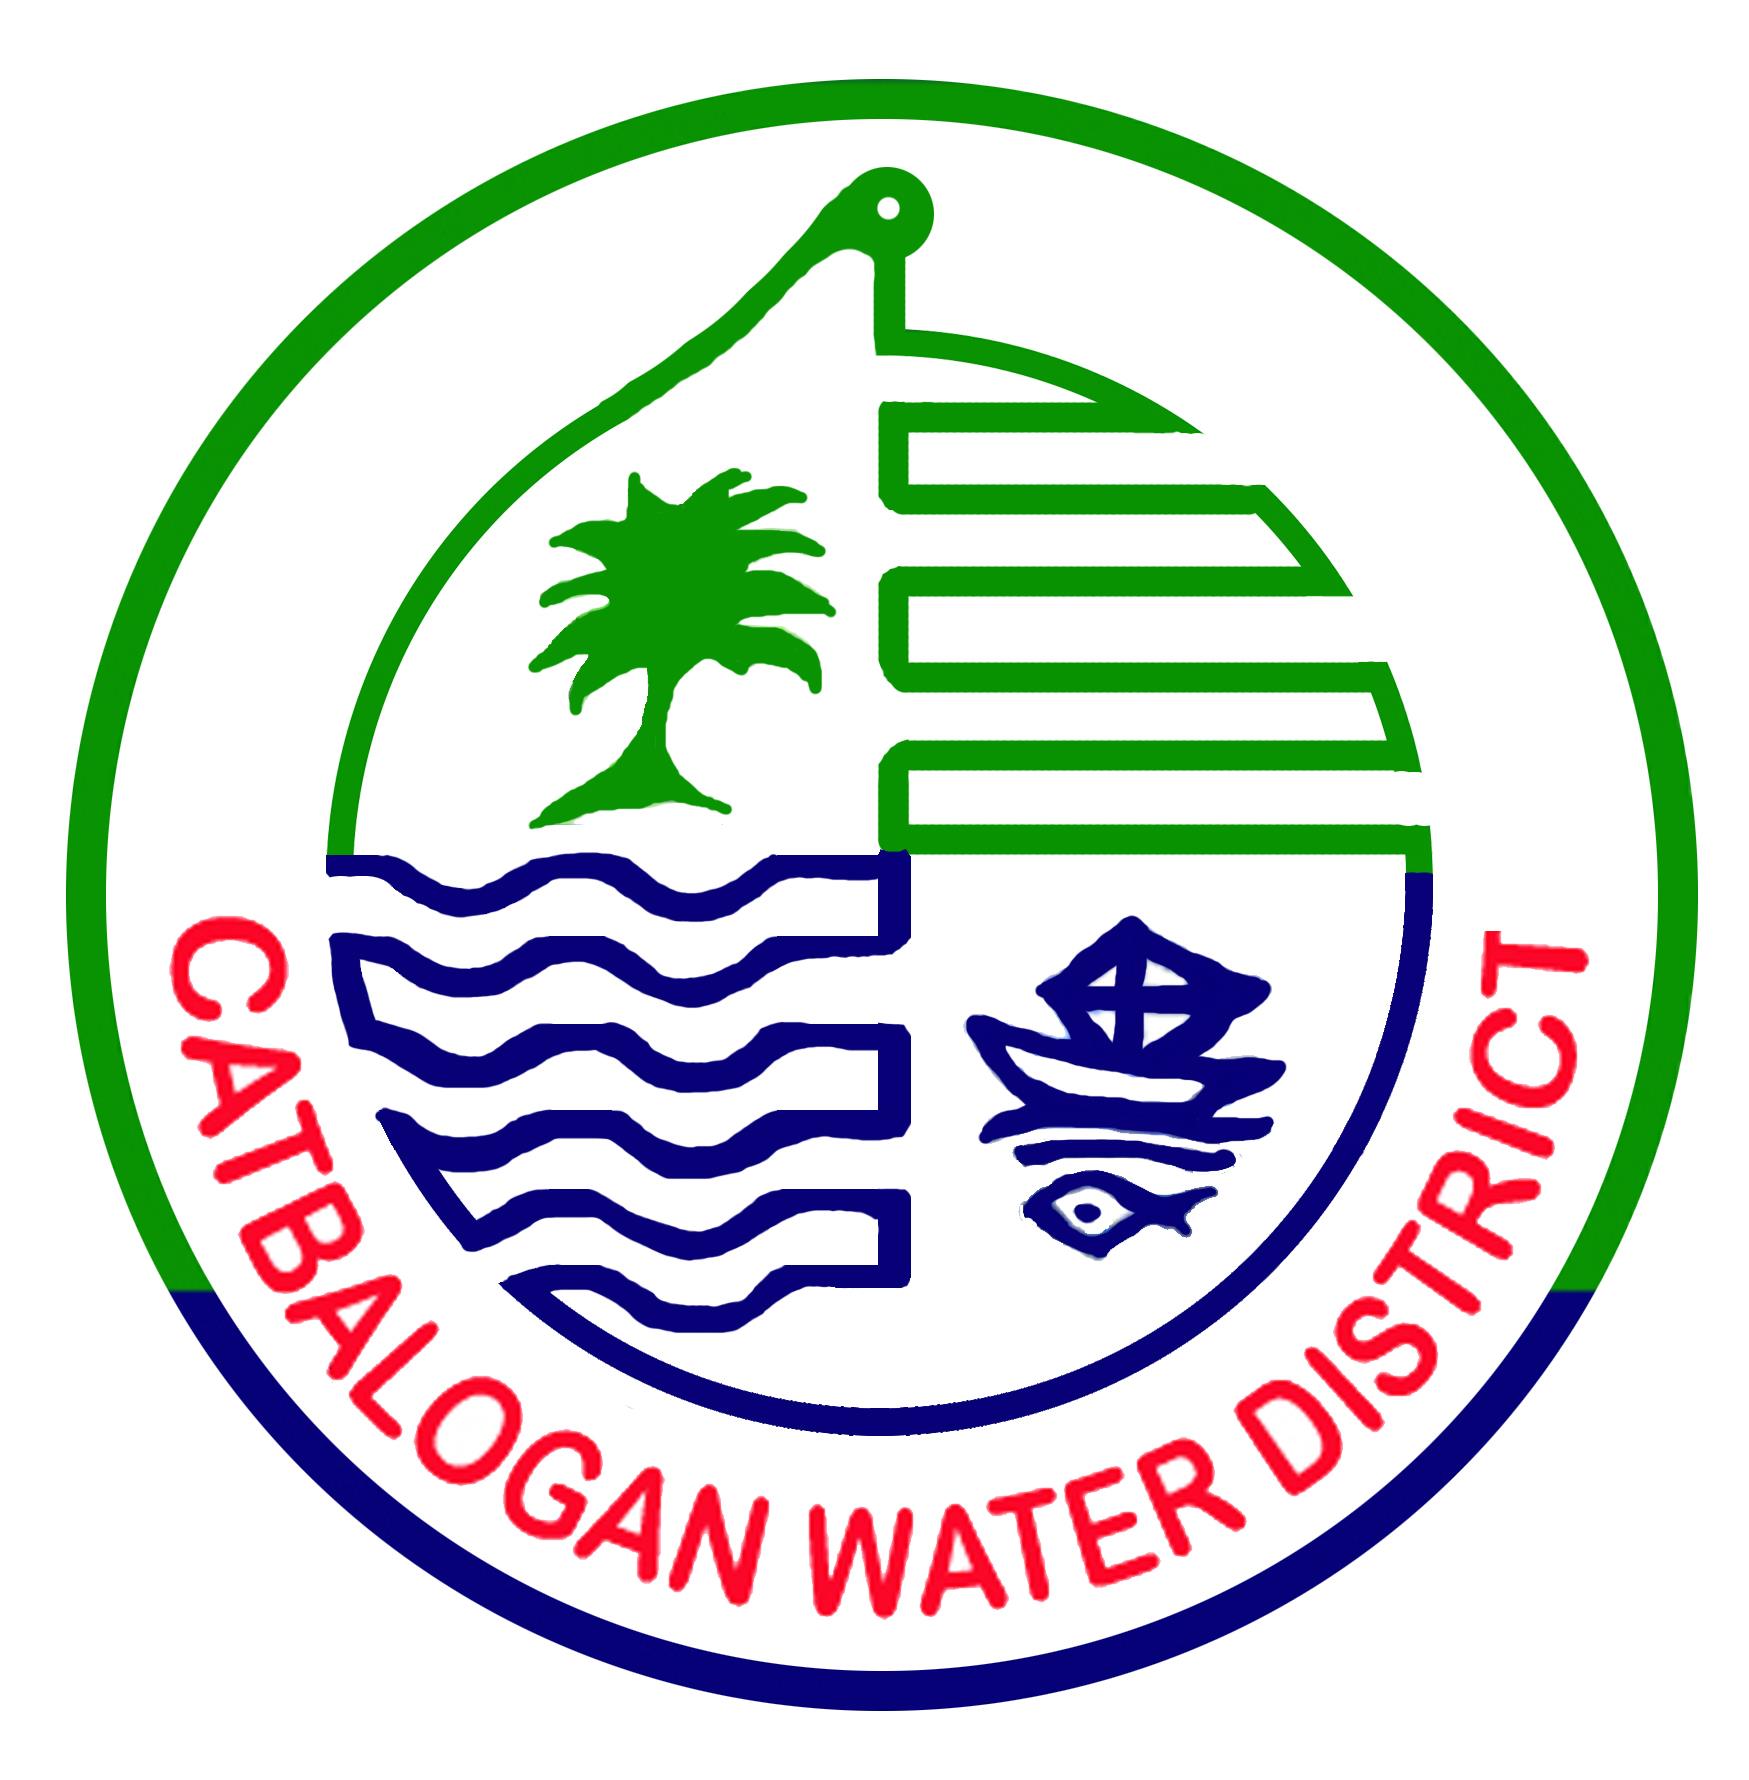 CATBALOGAN WATER DISTRICT